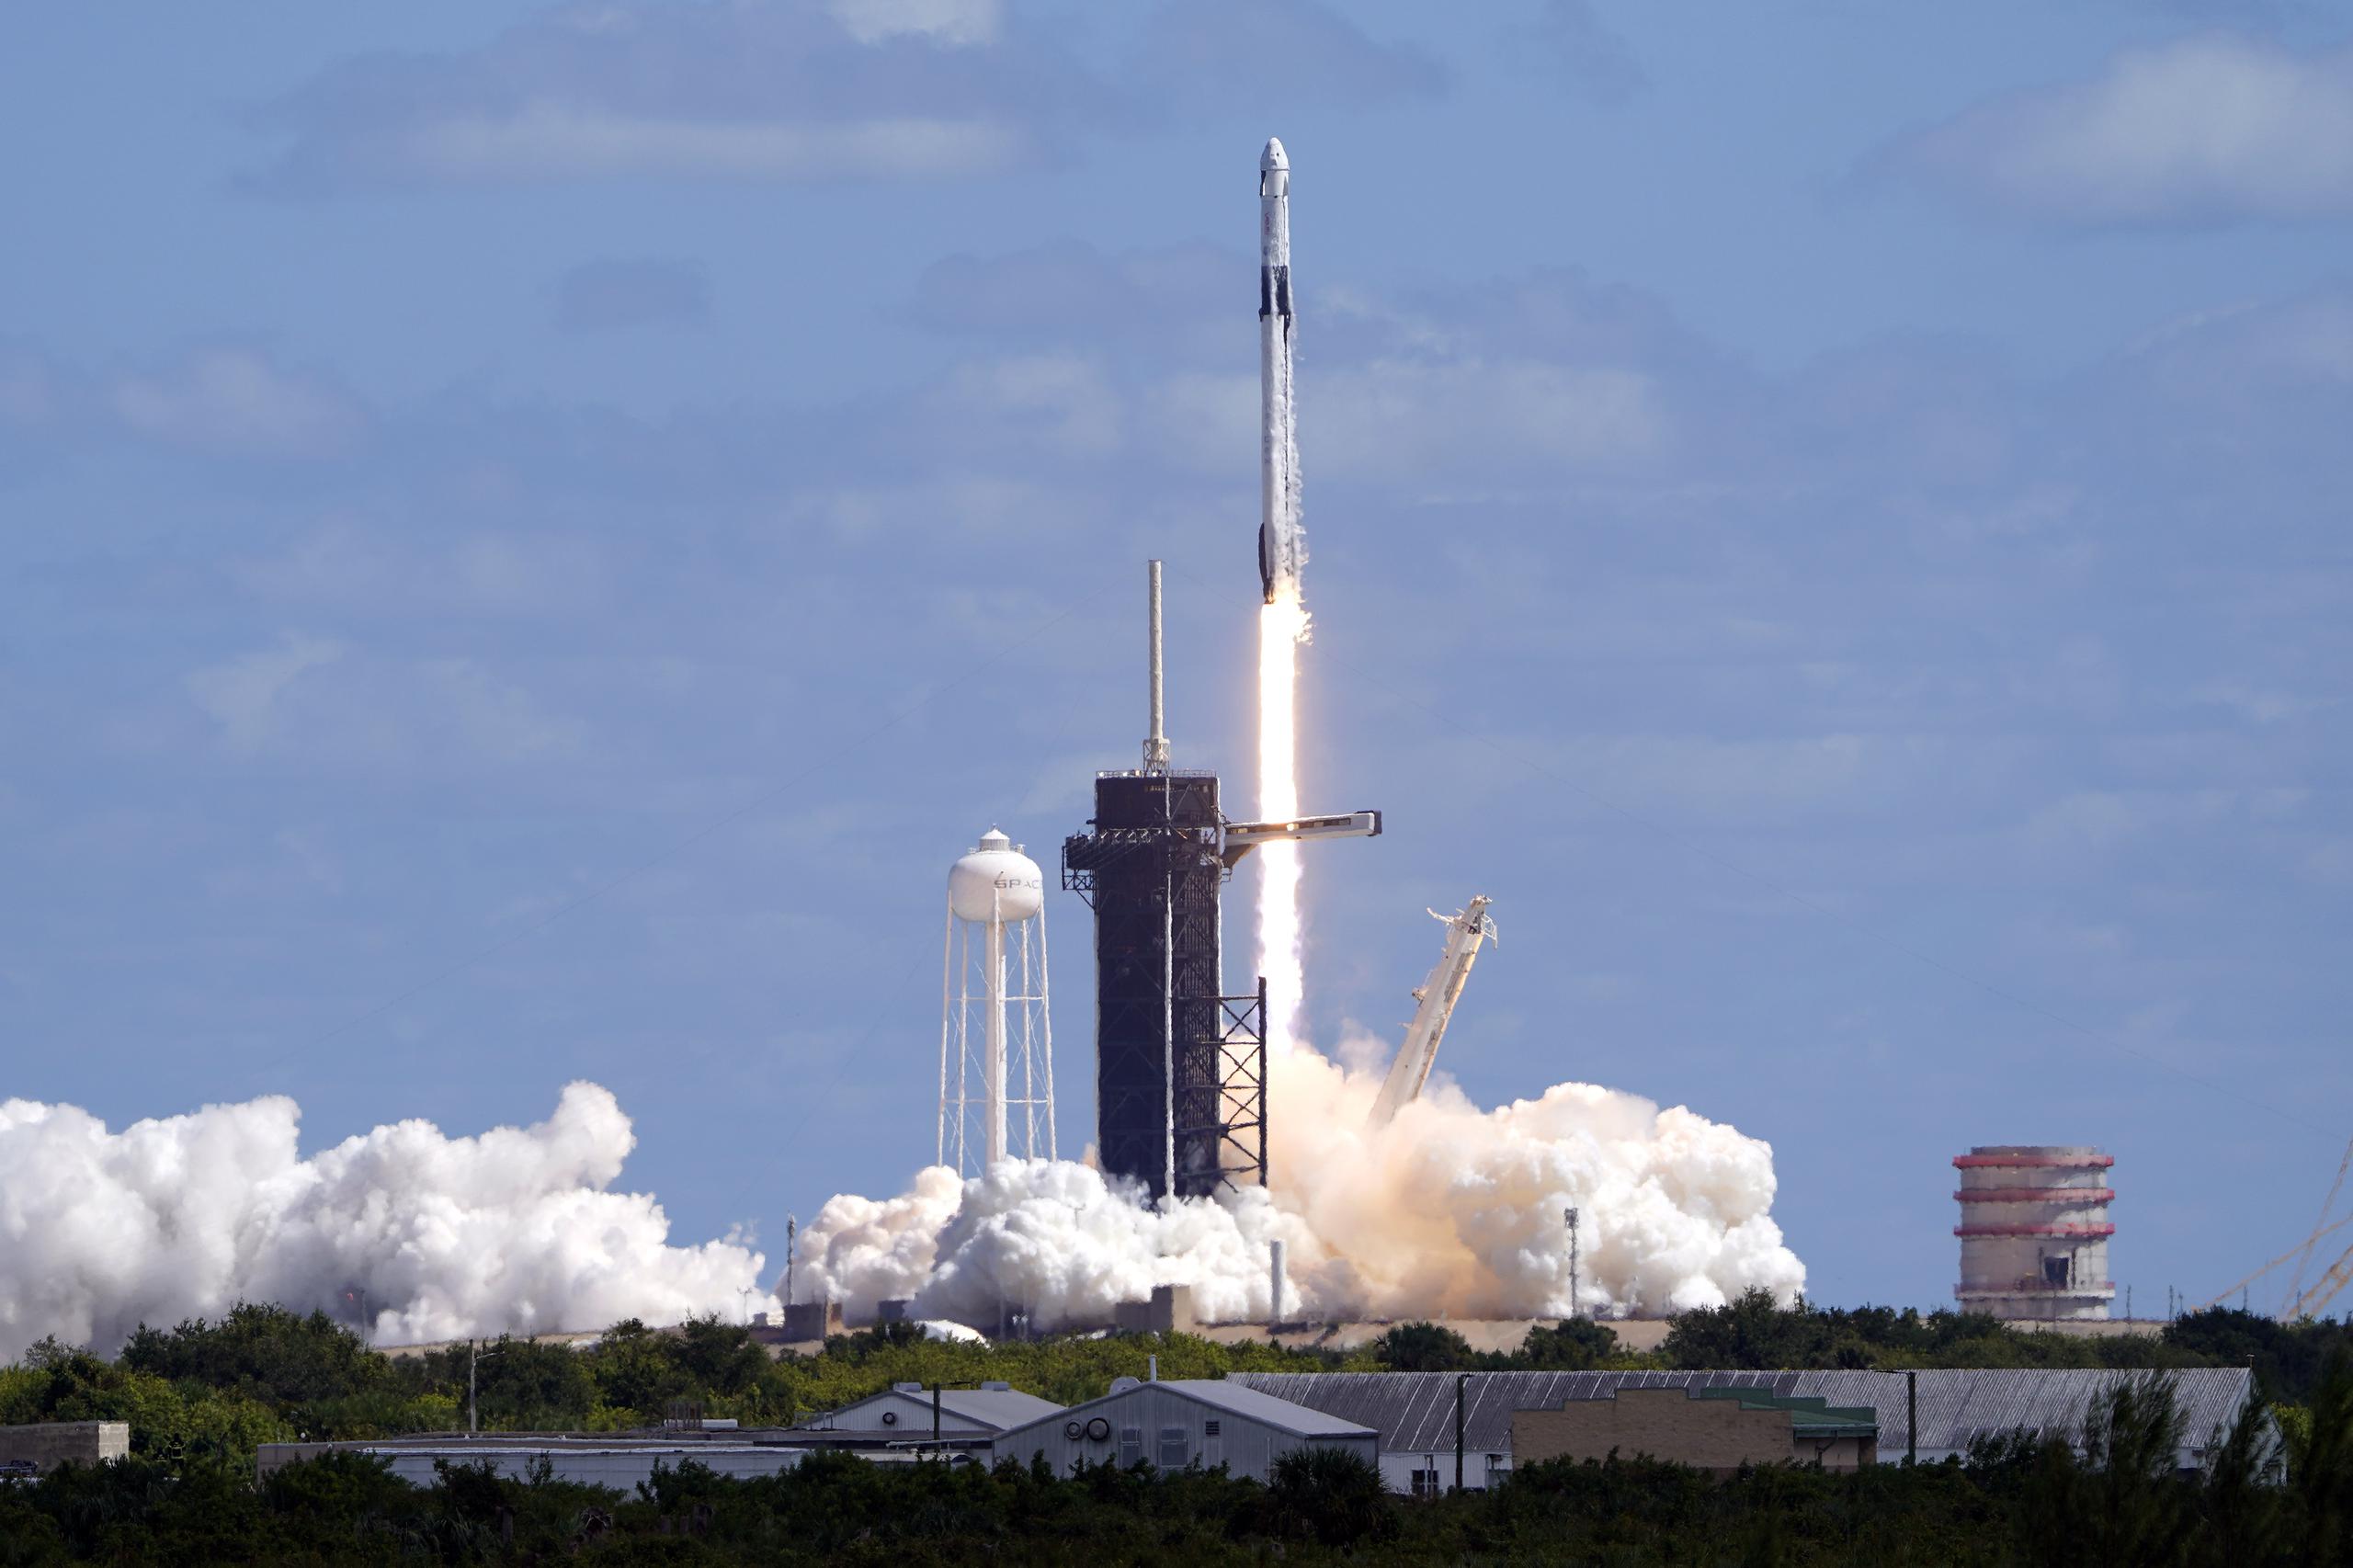 El cohete que se avistaría es un Falcon 9 de la compañía SpaceX.